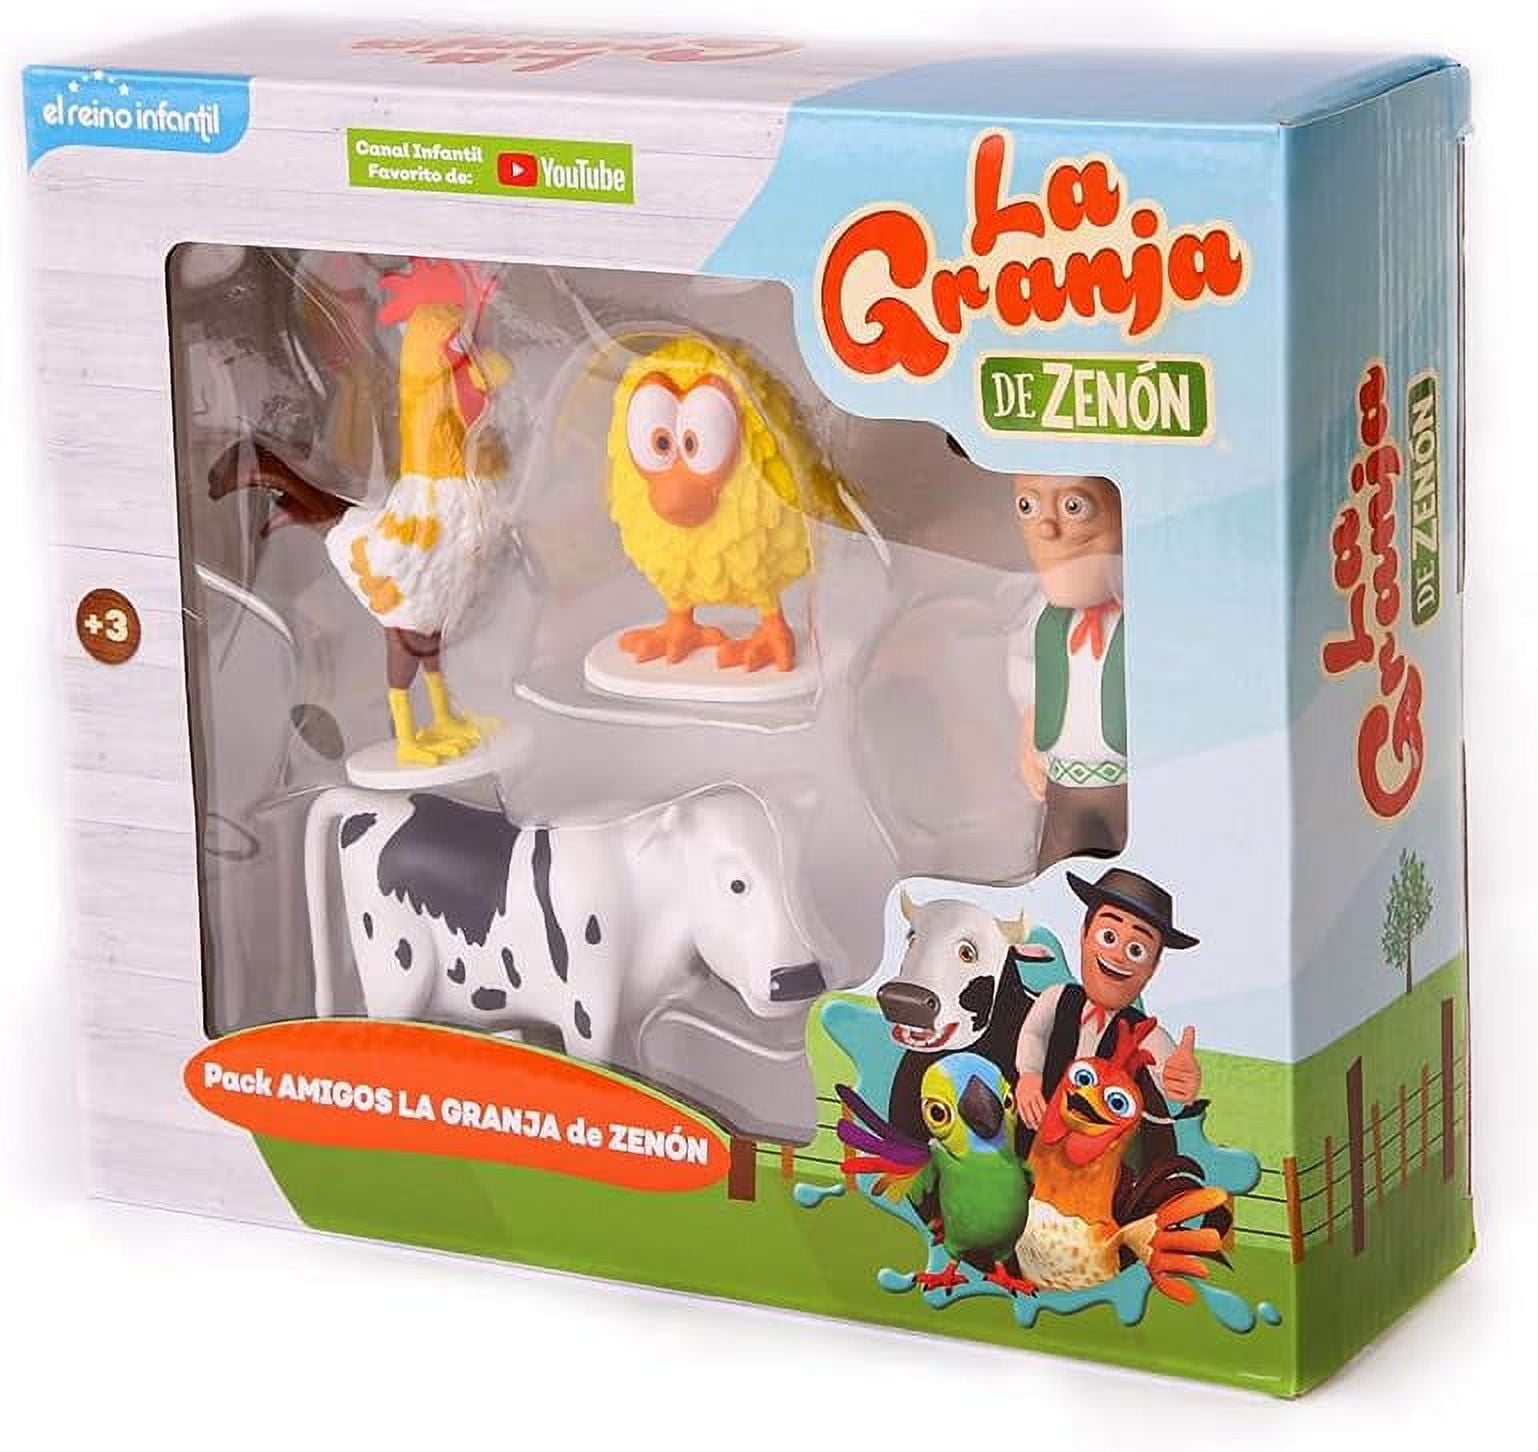 La Granja de Zenon Adventure Action Figures Set, 4 Collectible Action  Figures, Toys for Kids 